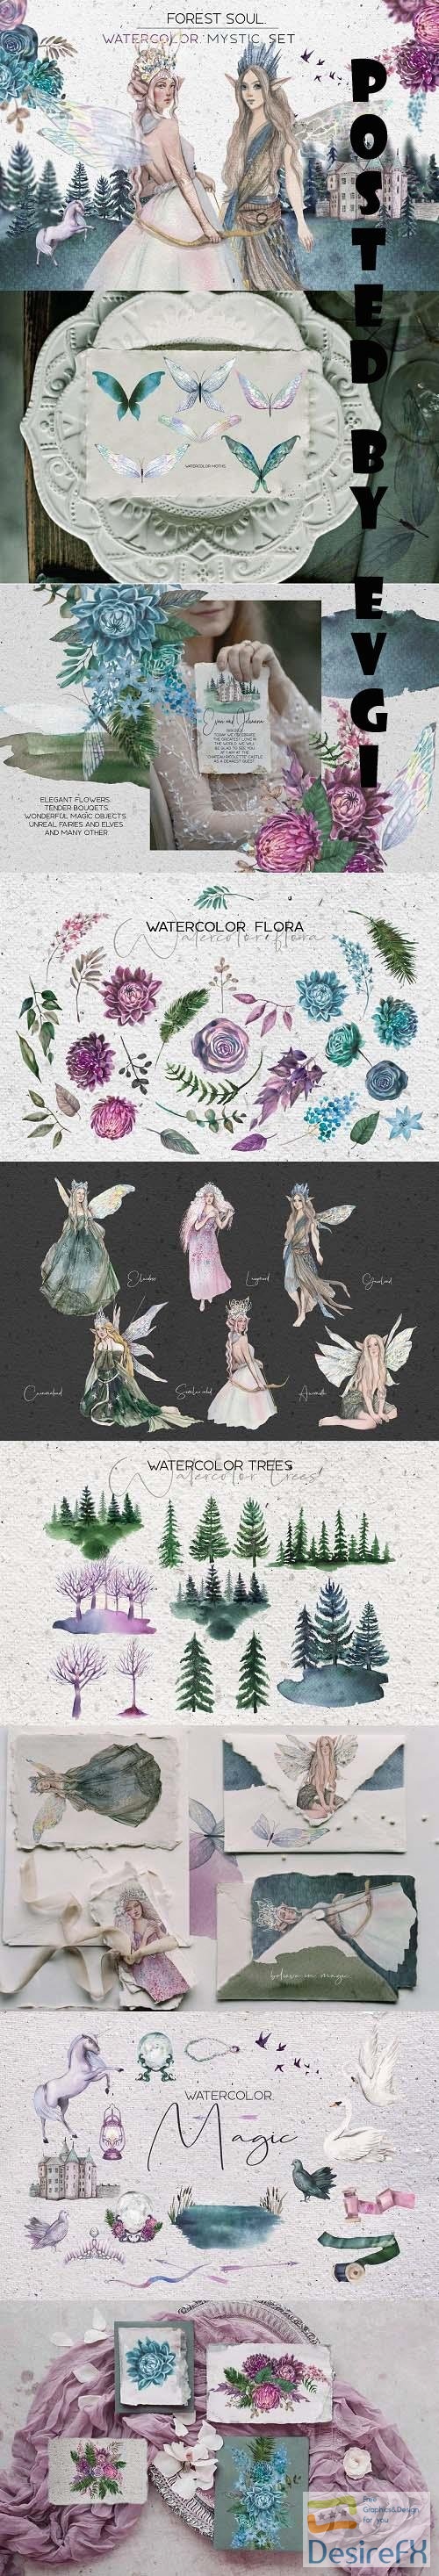 Forest soul - watercolor set - 4875318